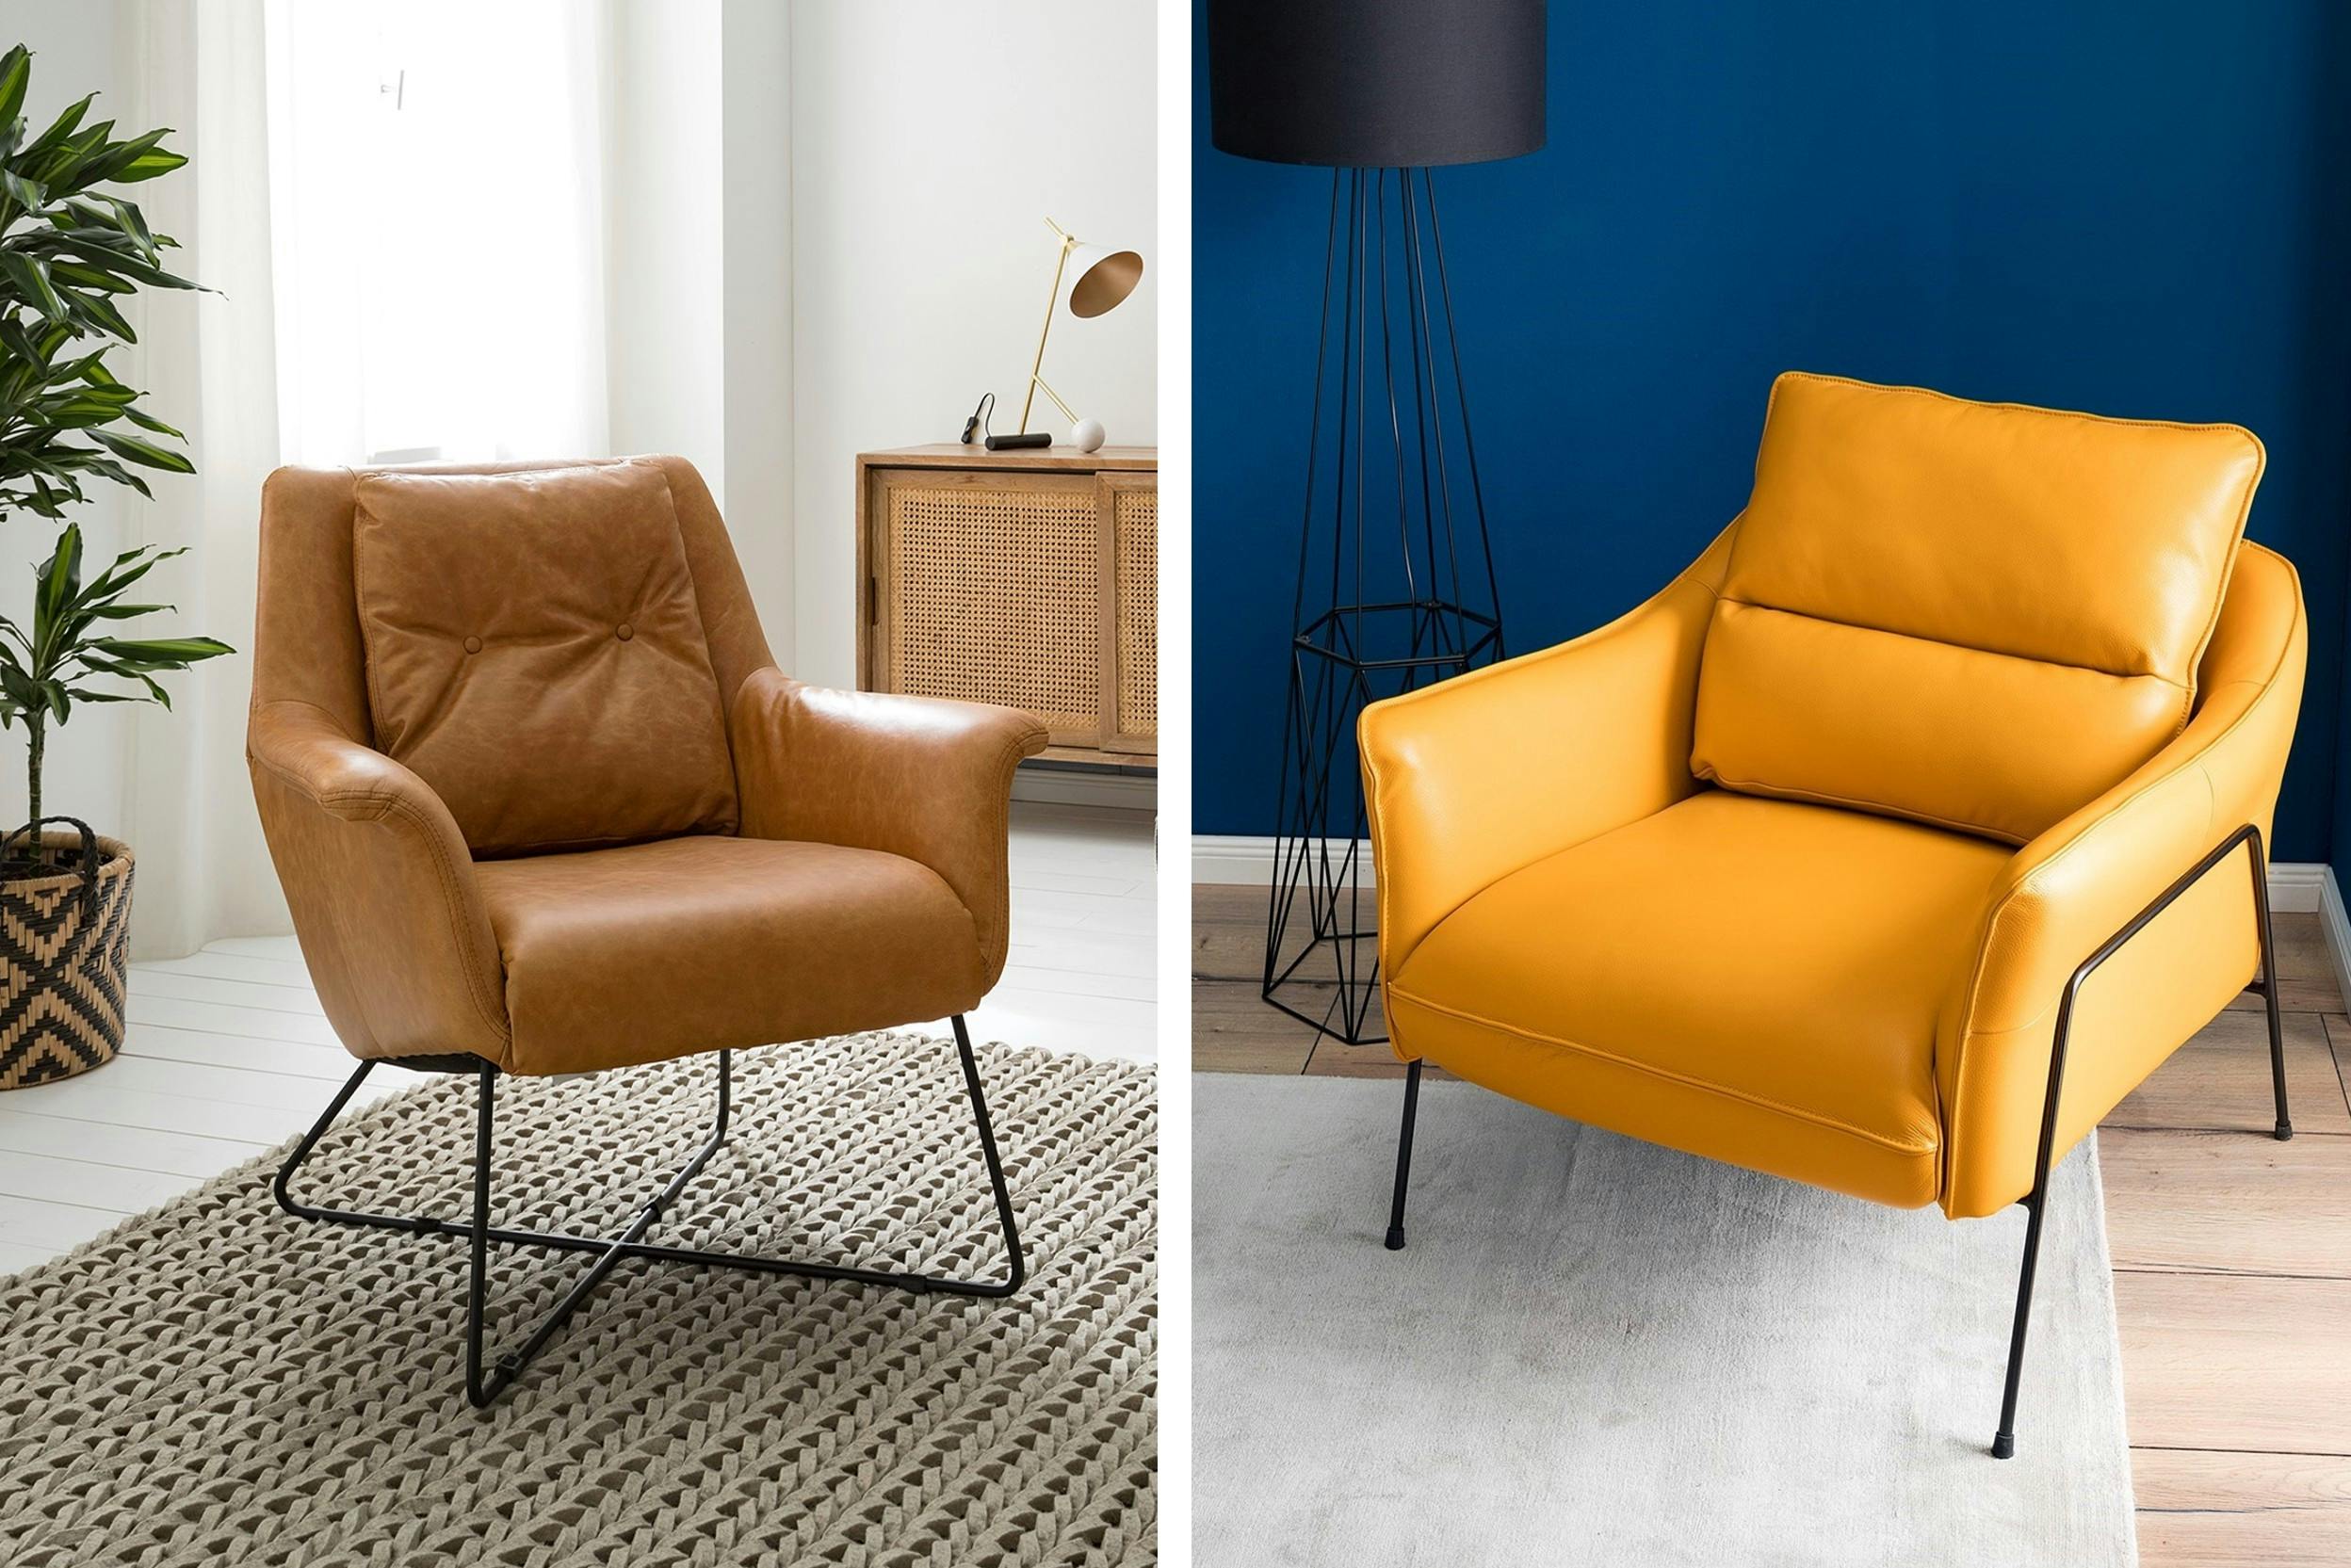 Hellbrauner Echtleder-Sessel und gelber Ledersessel mit minimalistischen Beinen aus Eisen (Marke: Studio Copenhagen)